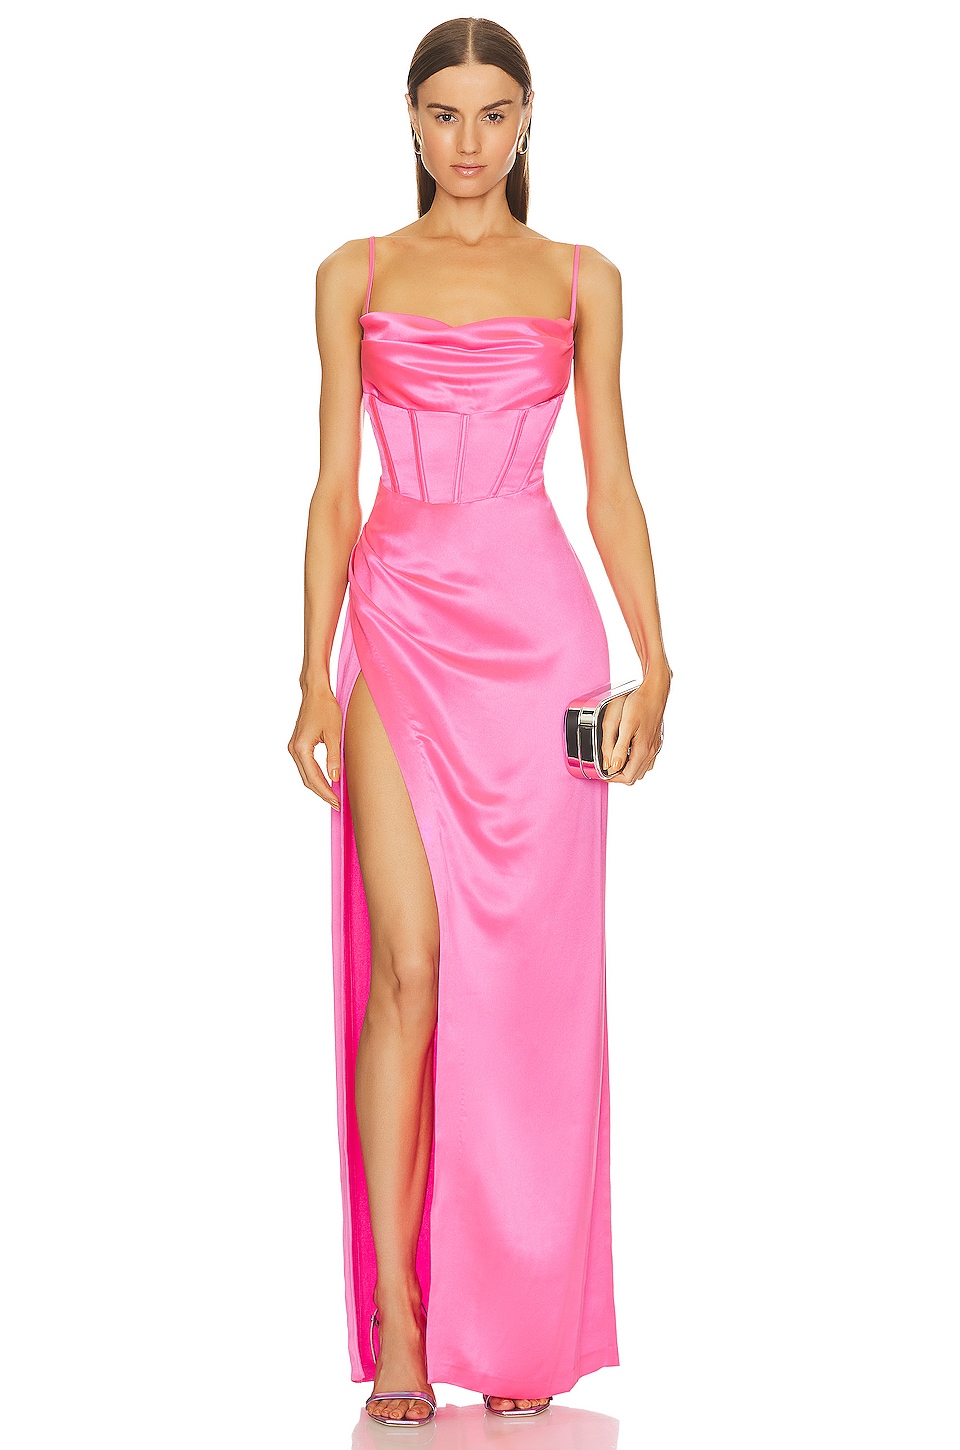 Платье retrofete Rosa, цвет Hyper Pink платье retrofete phoebe цвет knockout pink